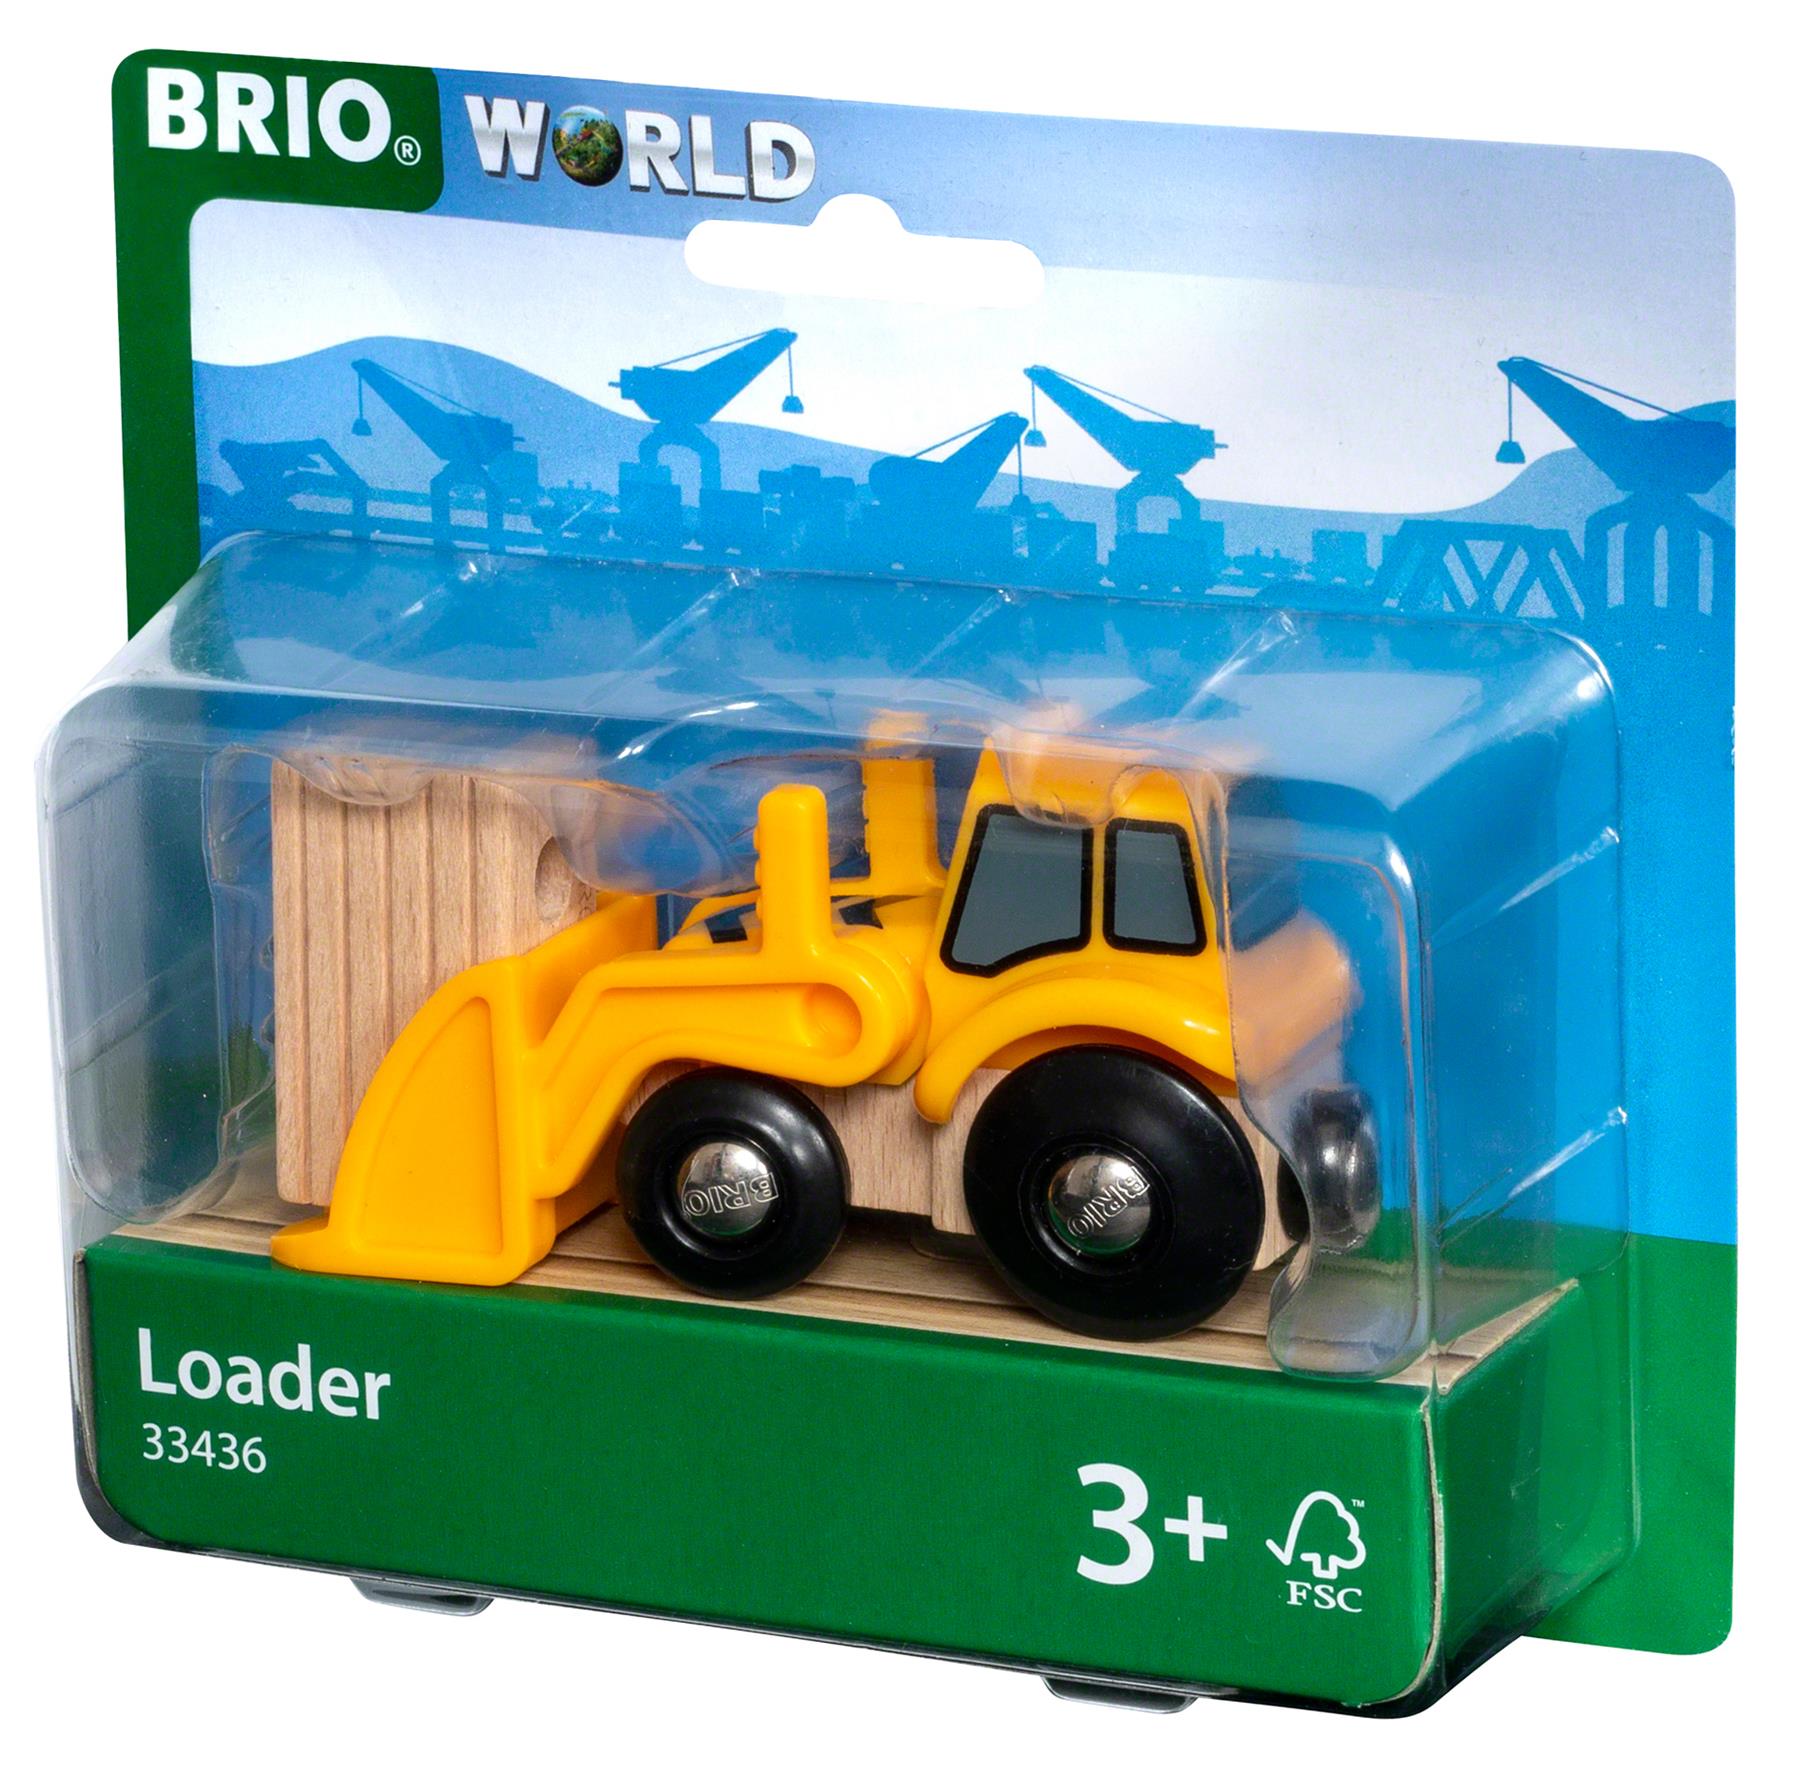 Brio World 33436 Loader